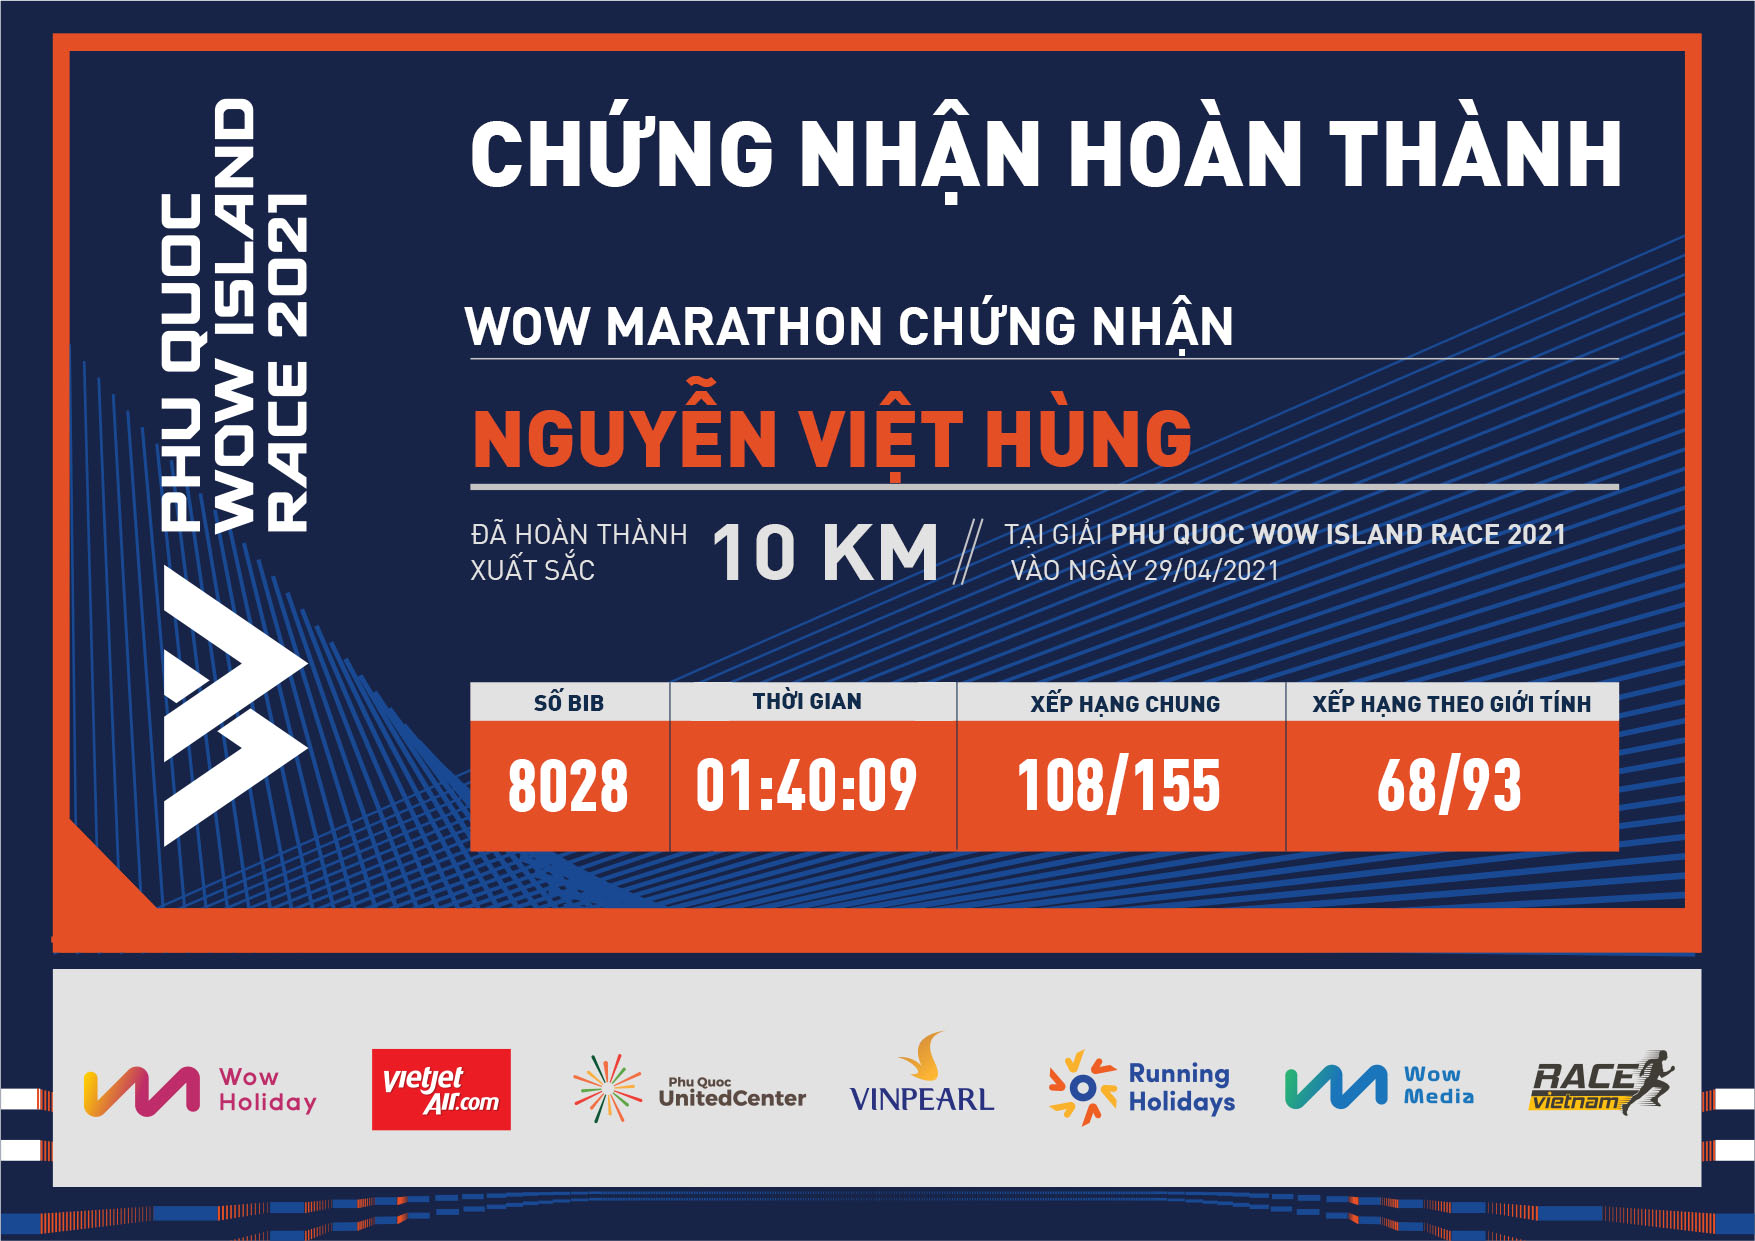 8028 - Nguyễn Việt Hùng